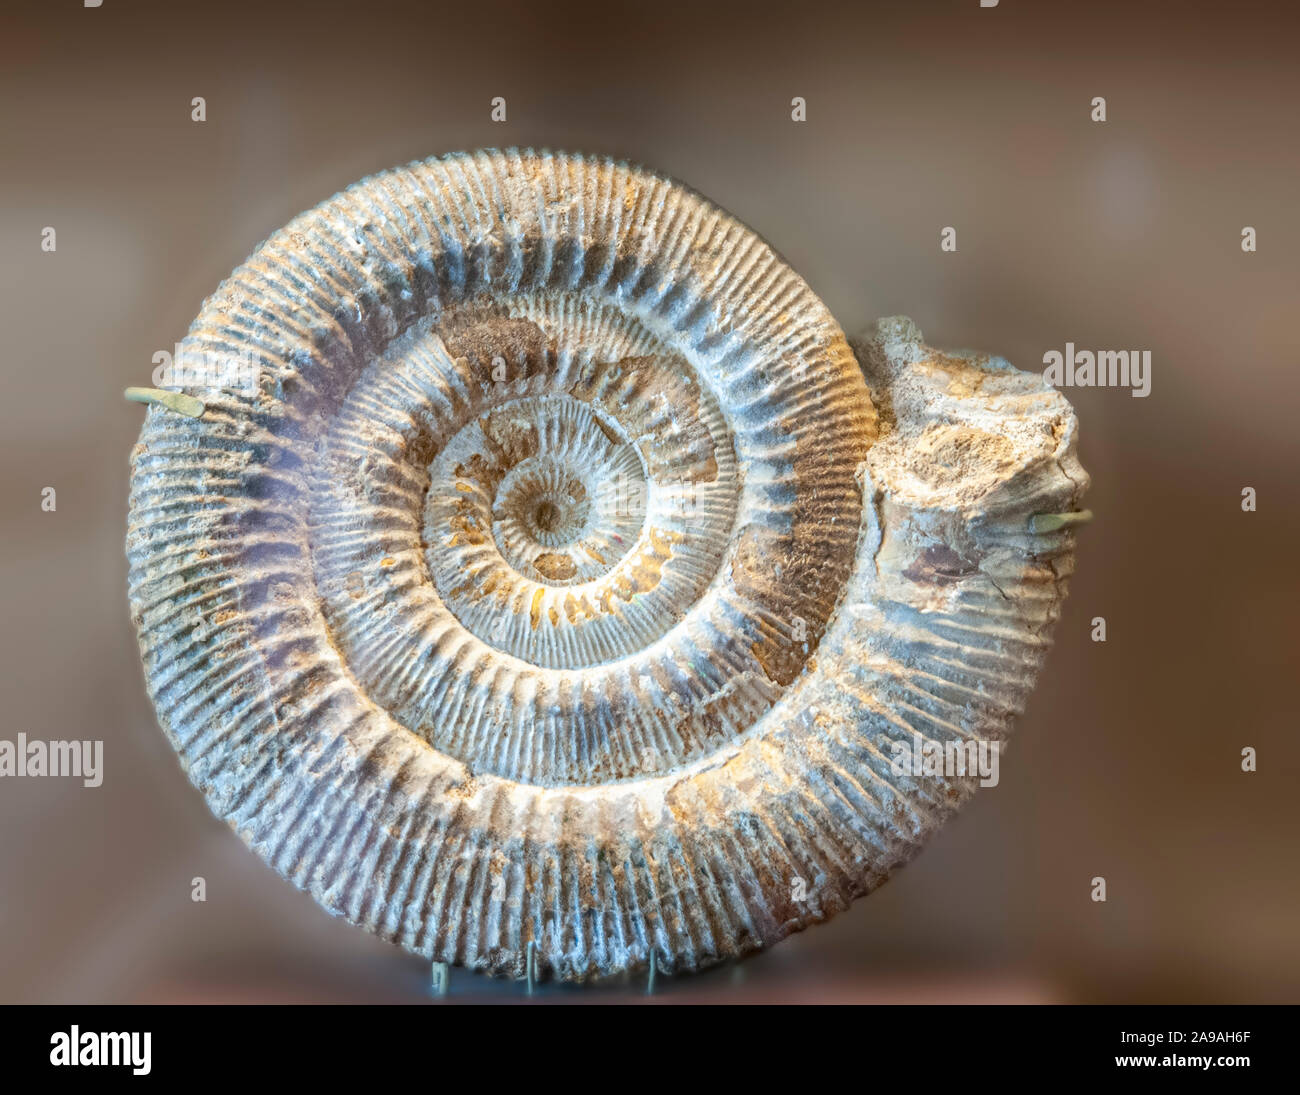 Stephanoceas freycincti (Ammonit) combustibles. Les ammonites ont disparu des invertébrés marins. Ils ont d'abord paru dans le Silurien supérieur au Dévonien précoce perio Banque D'Images